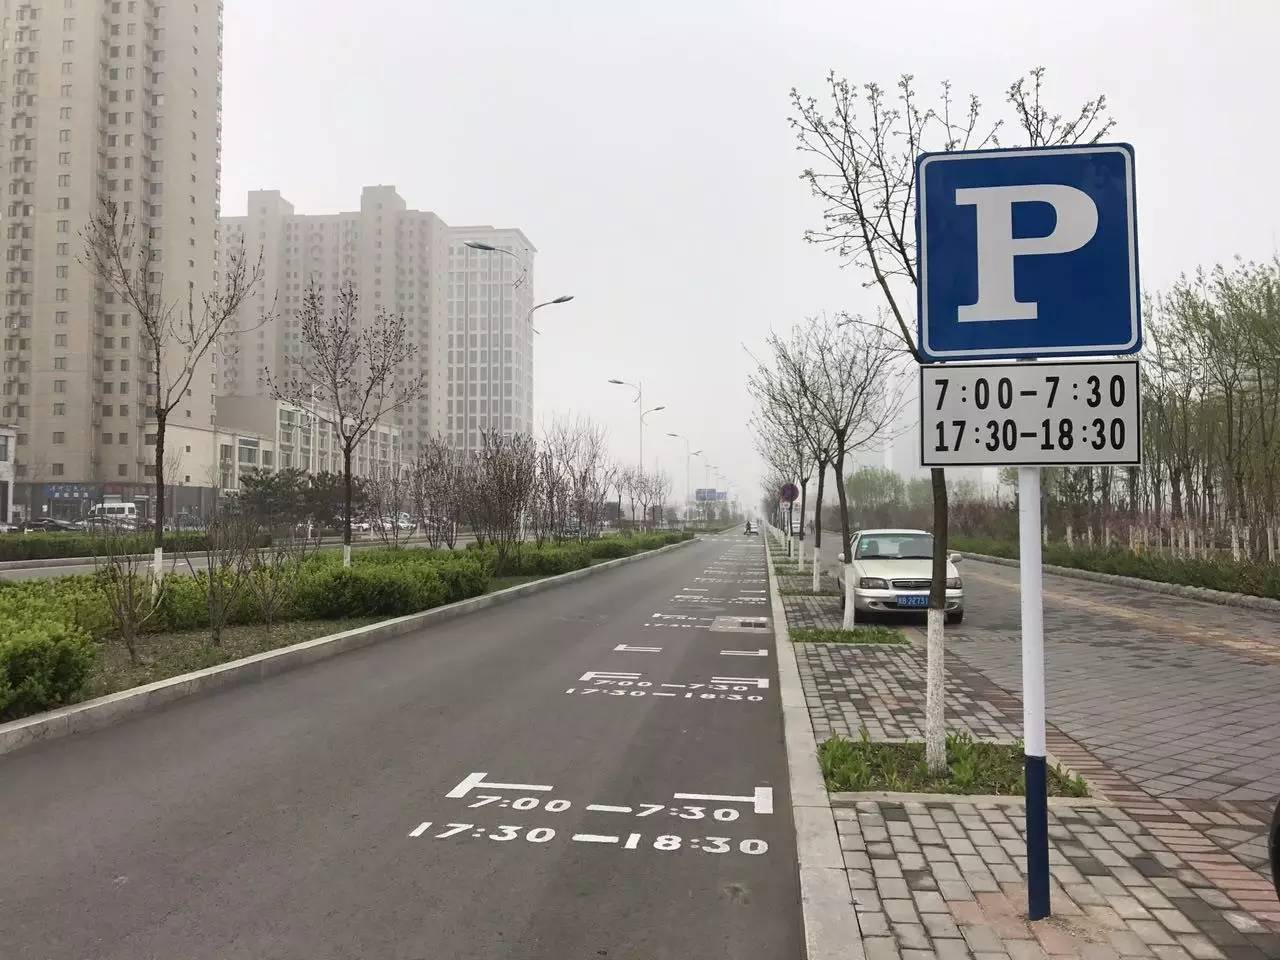 唐山:市区新增"限时"停车位!规定时限外停车将被罚100